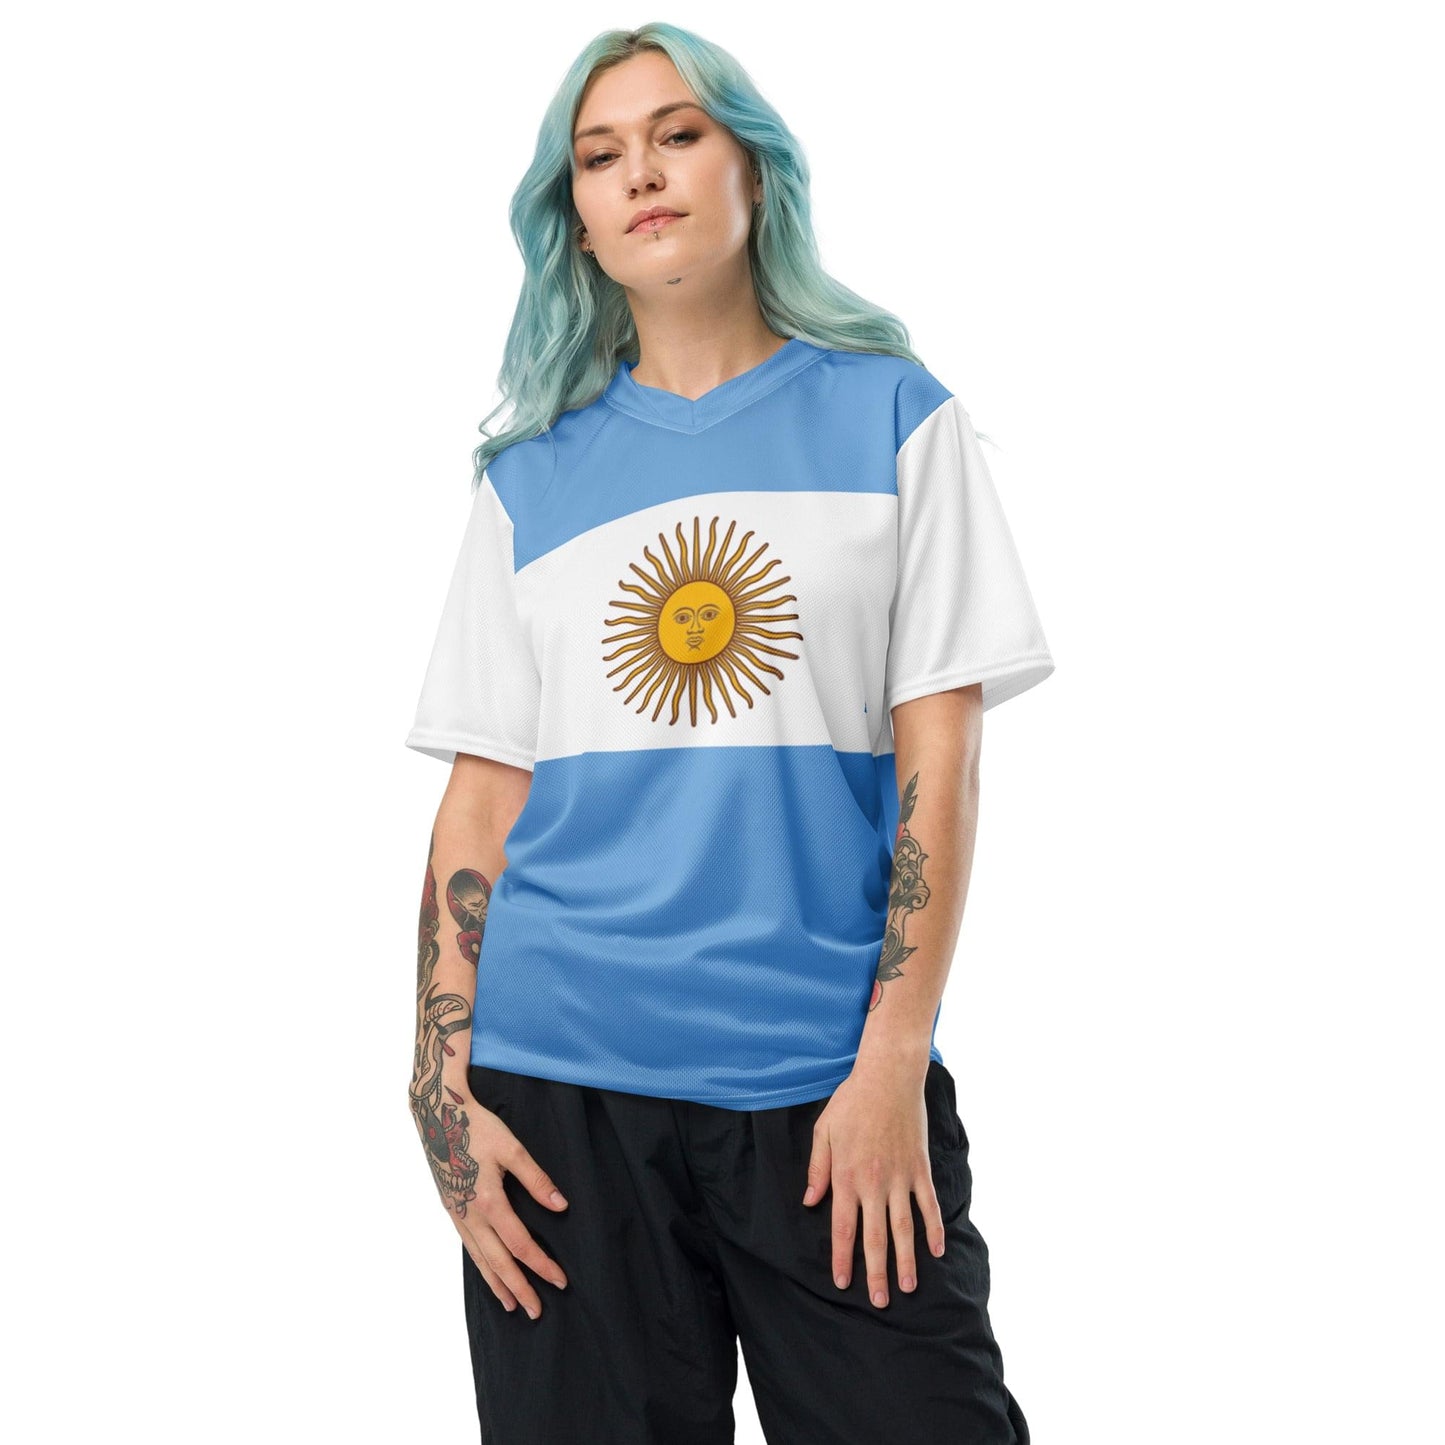 Camiseta deportiva unisex de poliéster reciclado con bandera de Argentina, tallas 2XS - 6XL